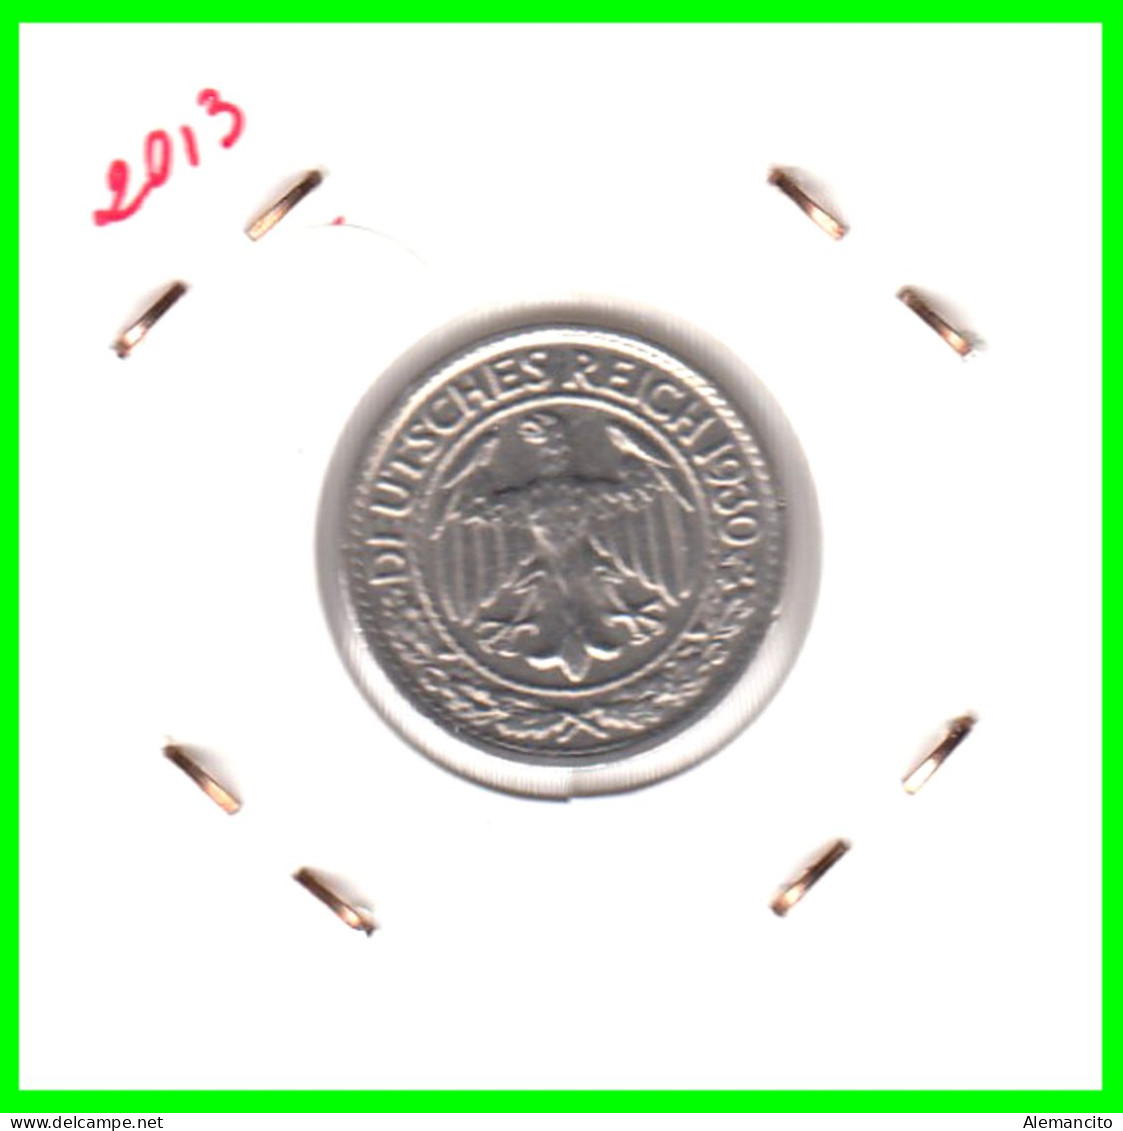 GERMANY REPÚBLICA DE WEIMAR 50 REICHSPFENNIG ( 1930 CECA - D )  (REICHSPFENNIG KM # 40 - 50 Rentenpfennig & 50 Reichspfennig